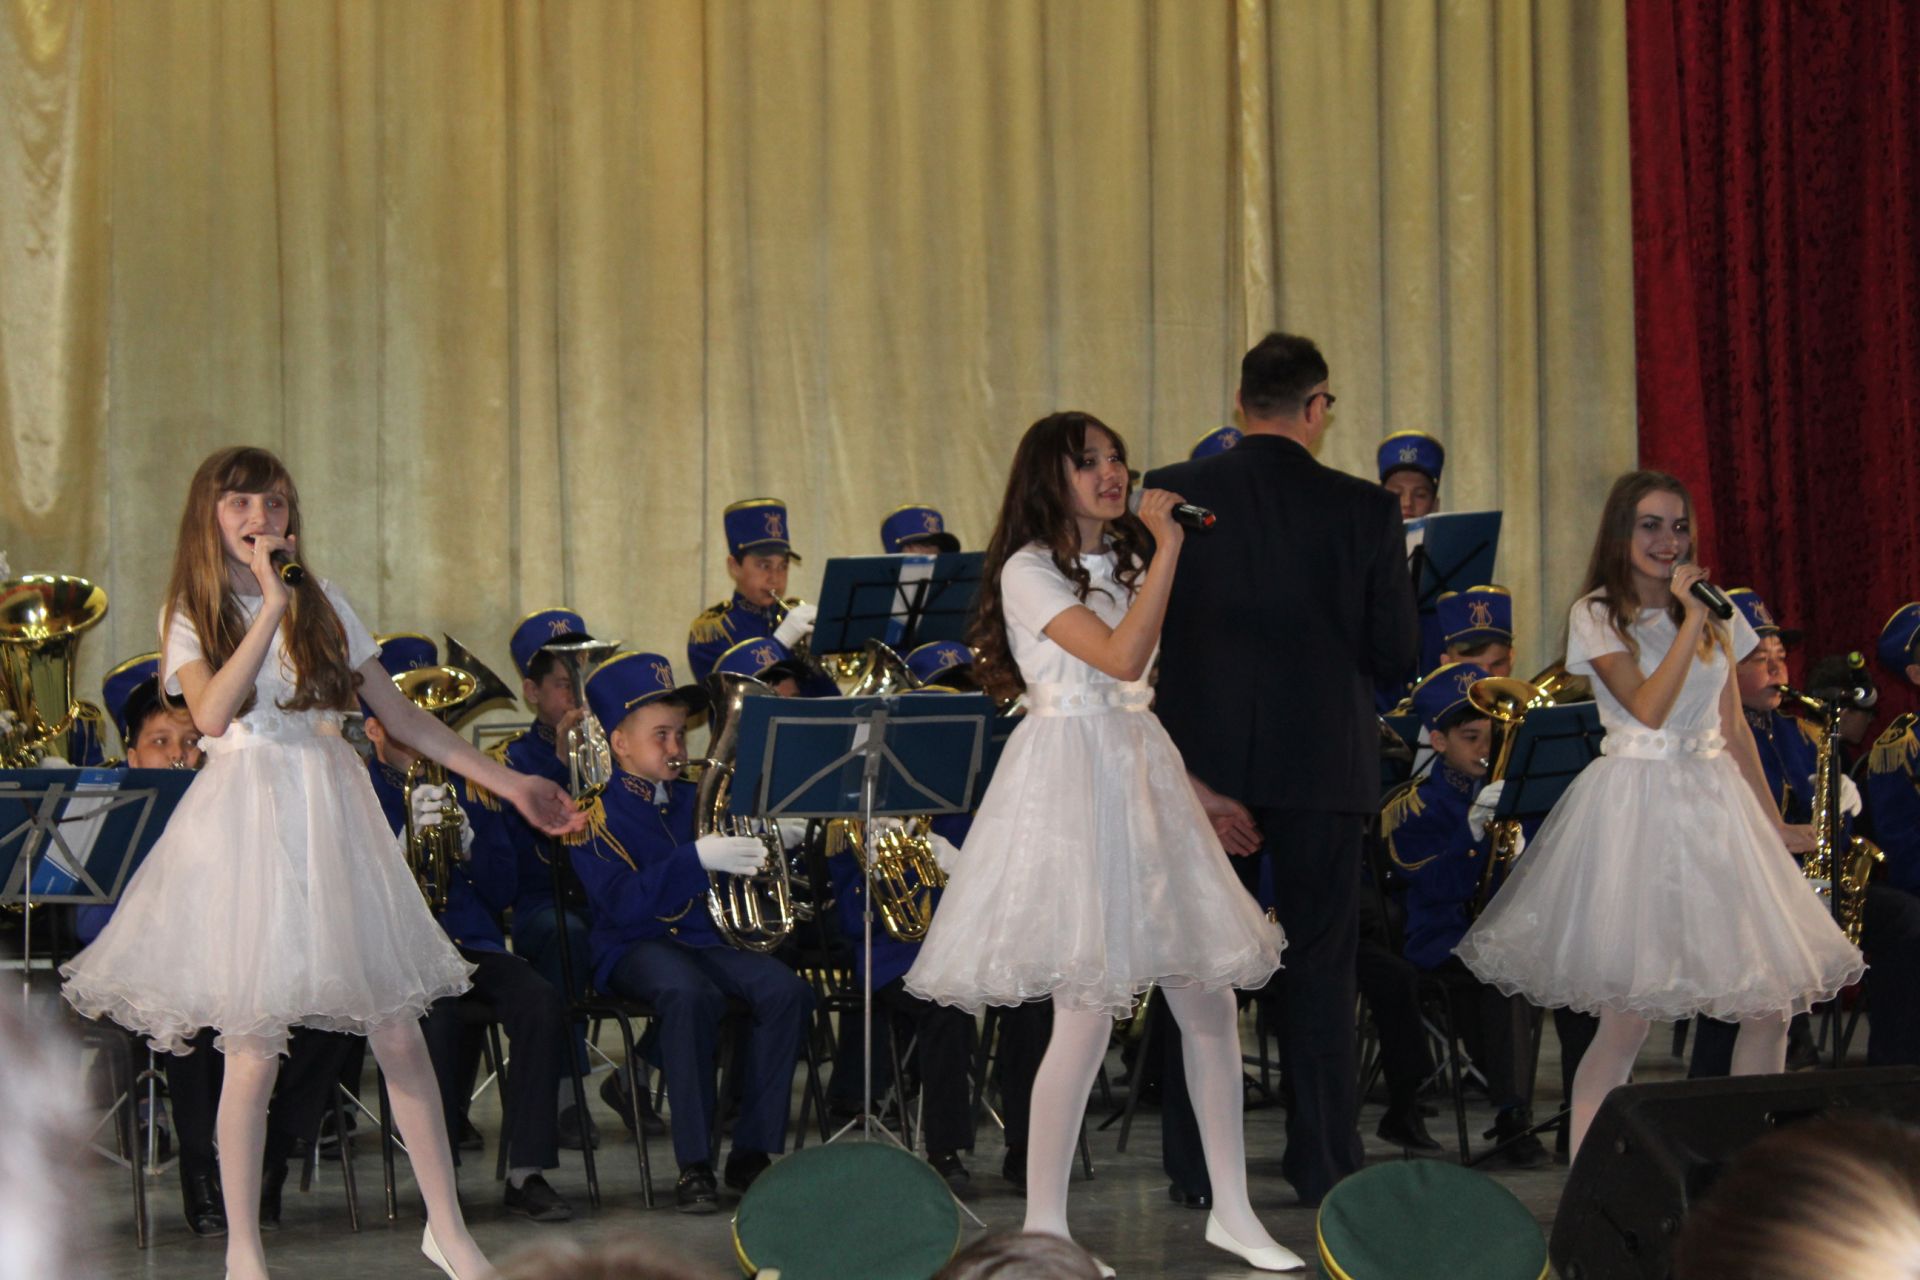 В Кукморе состоялся межрегиональный конкурс духовых оркестров